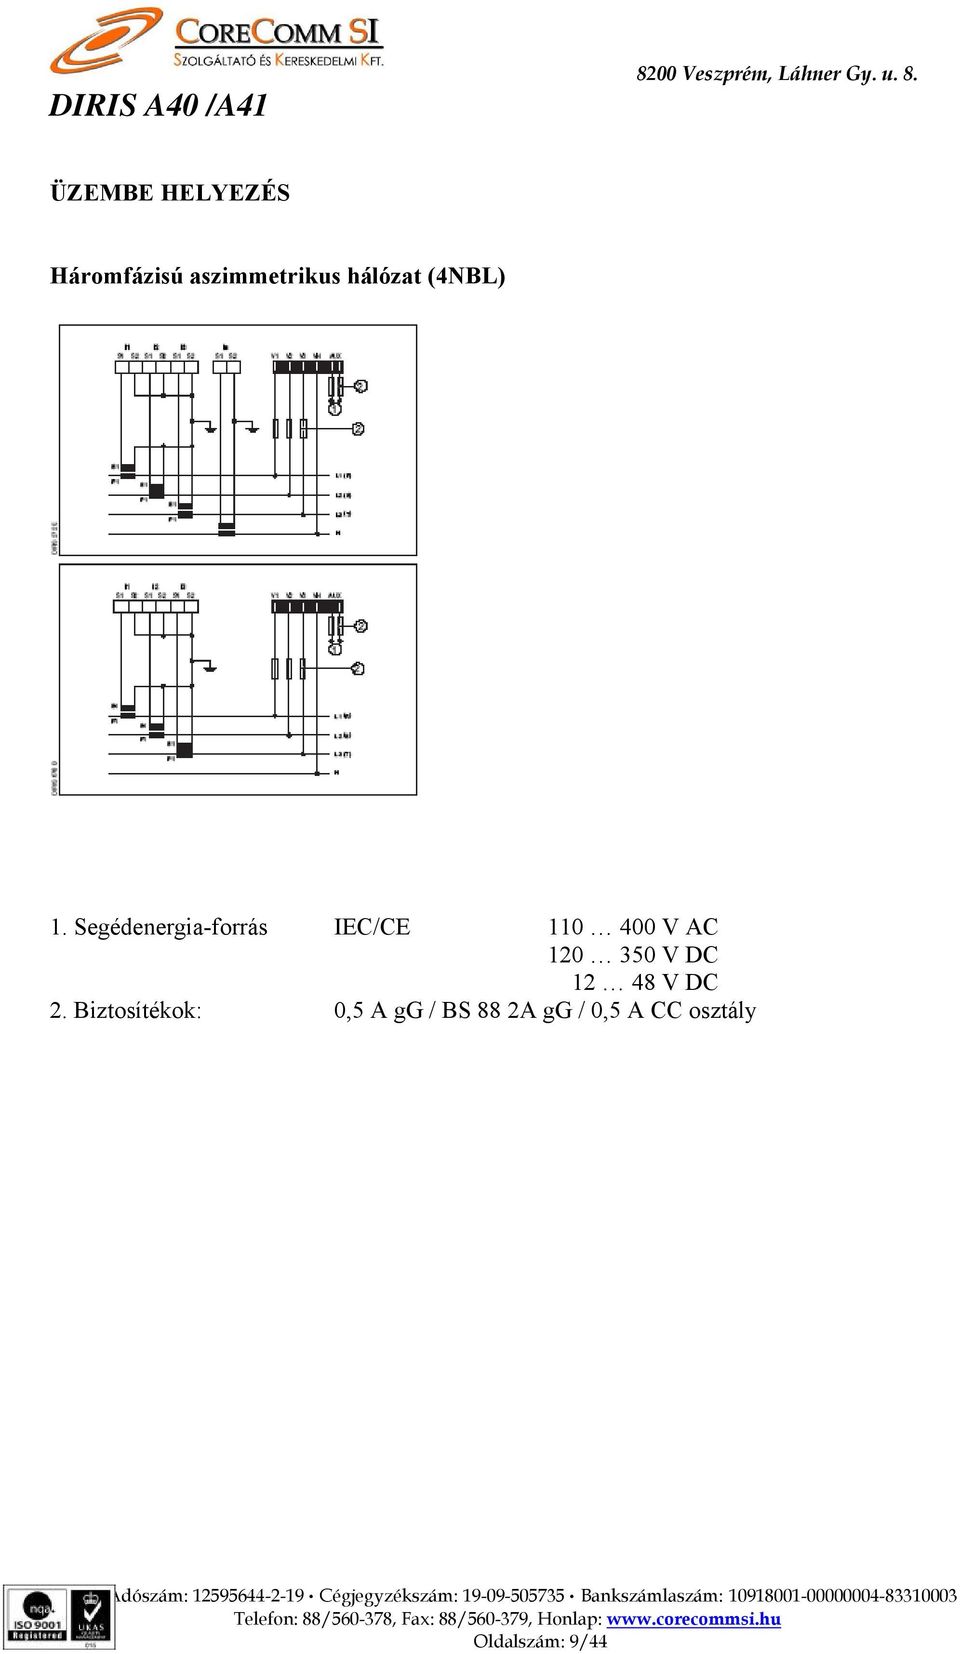 Segédenergia-forrás IEC/CE 110 400 V AC 120 350 V